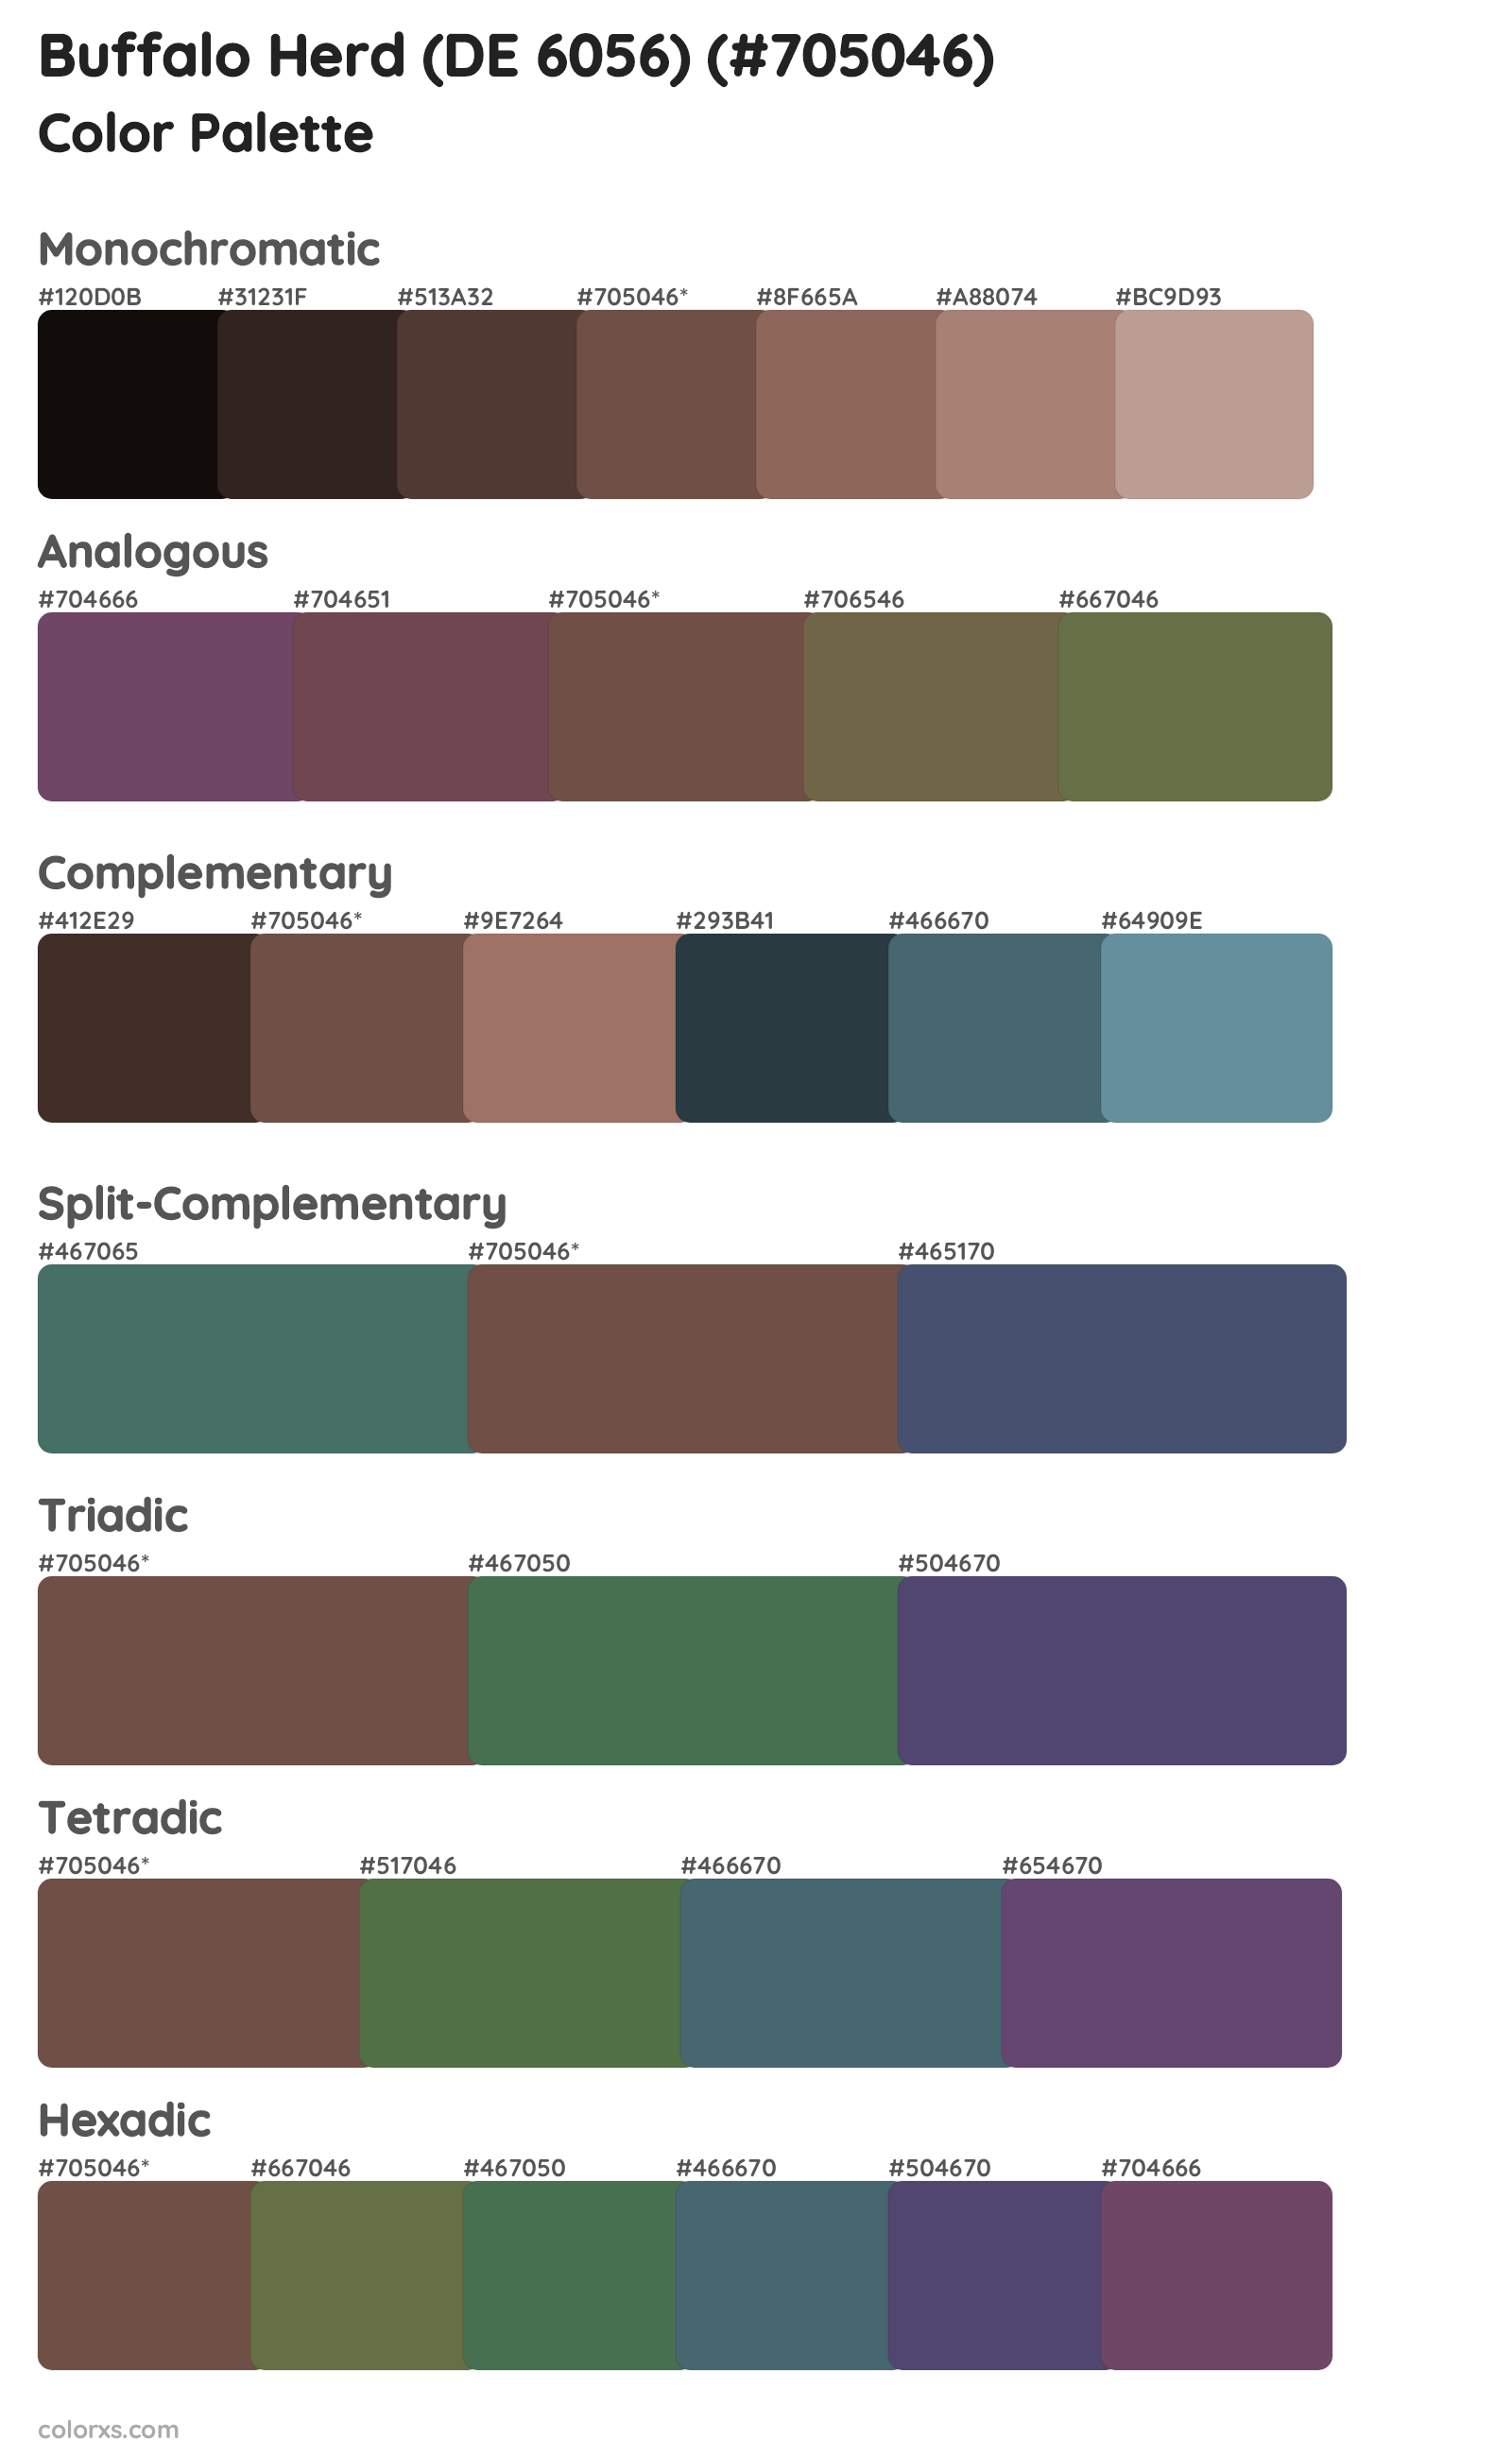 Buffalo Herd (DE 6056) Color Scheme Palettes